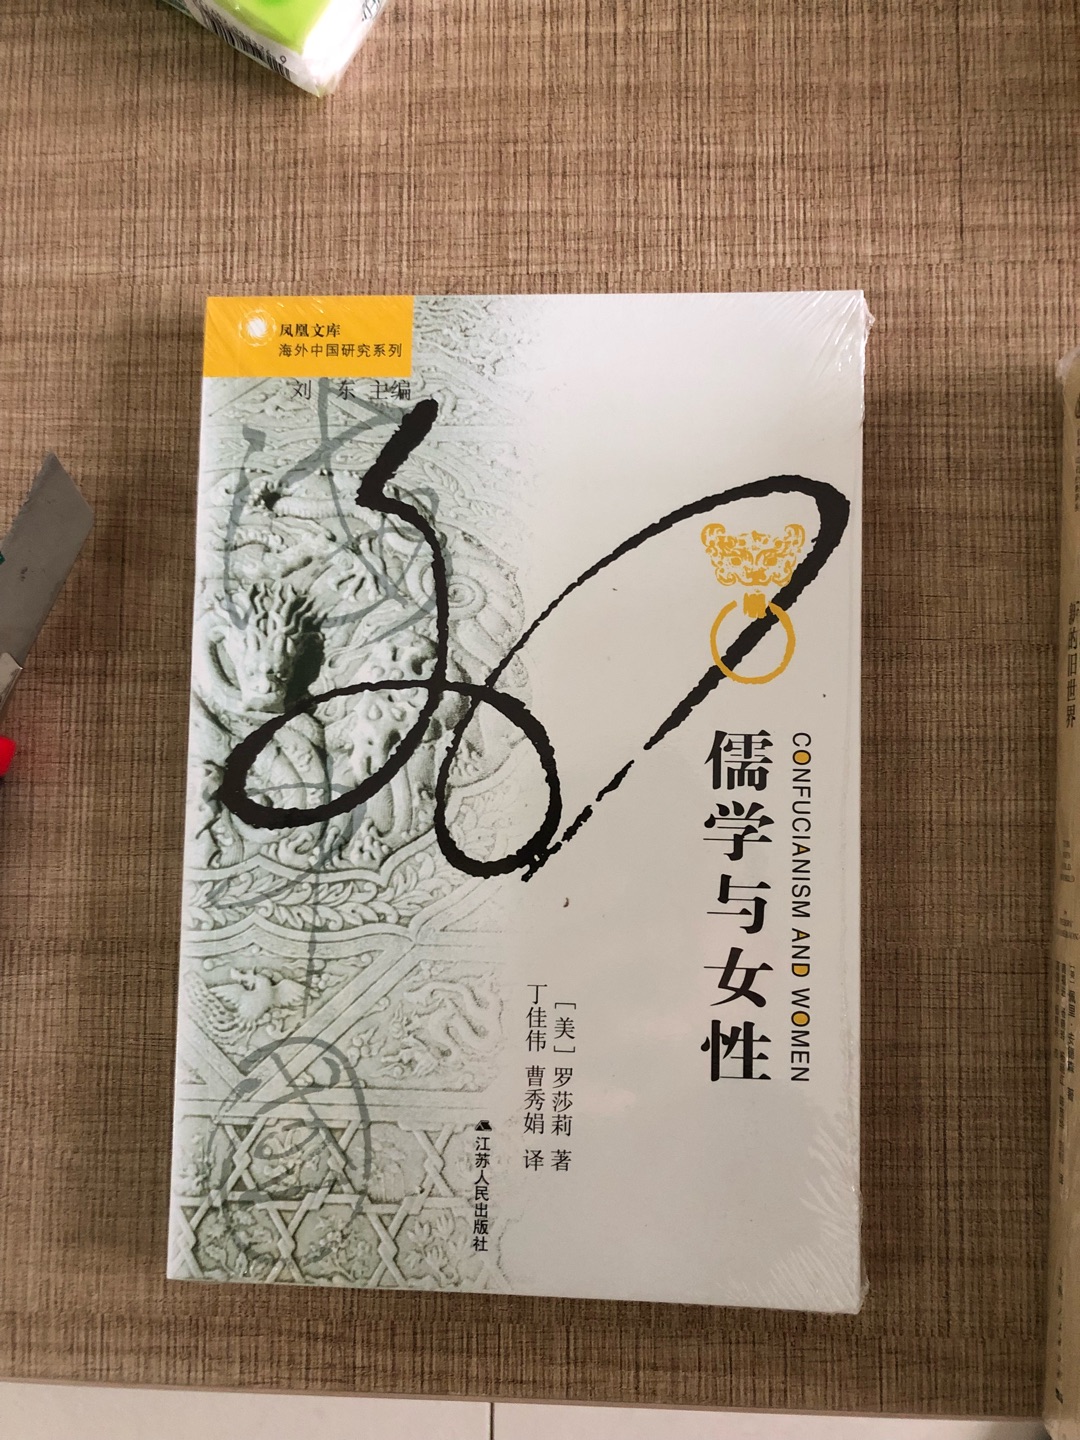 最近比较关注女性问题，这也是中国研究中非常缺失的领域，海外中国研究这一套中翻译的与女性相关的几本书都很好，我都买了阅读。